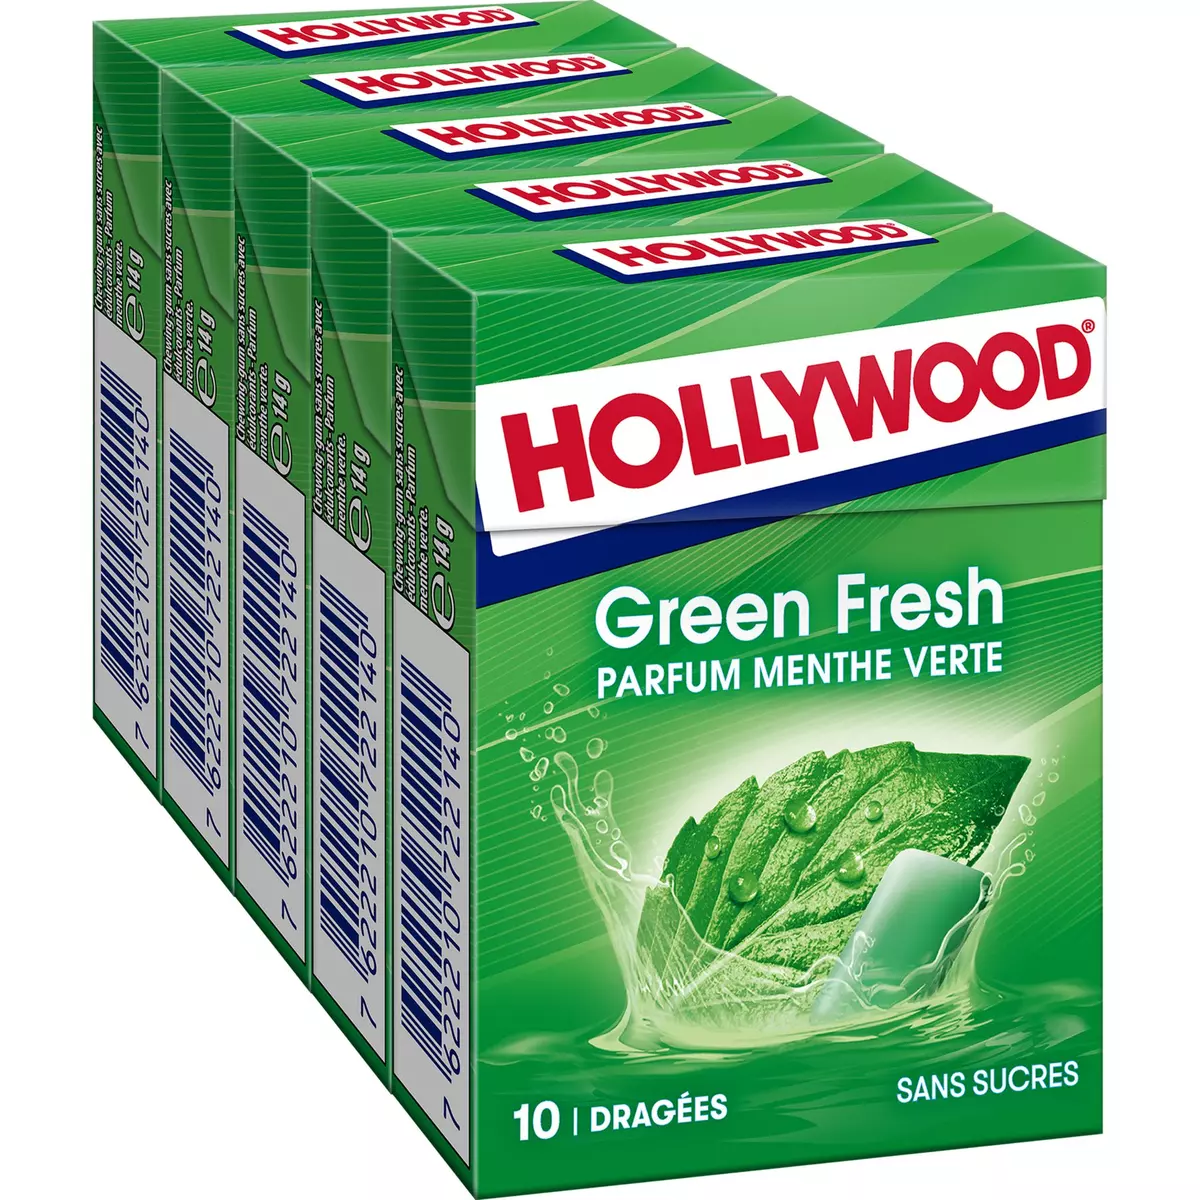 Chewing-gum sans sucres menthe verte 67 g Freedent